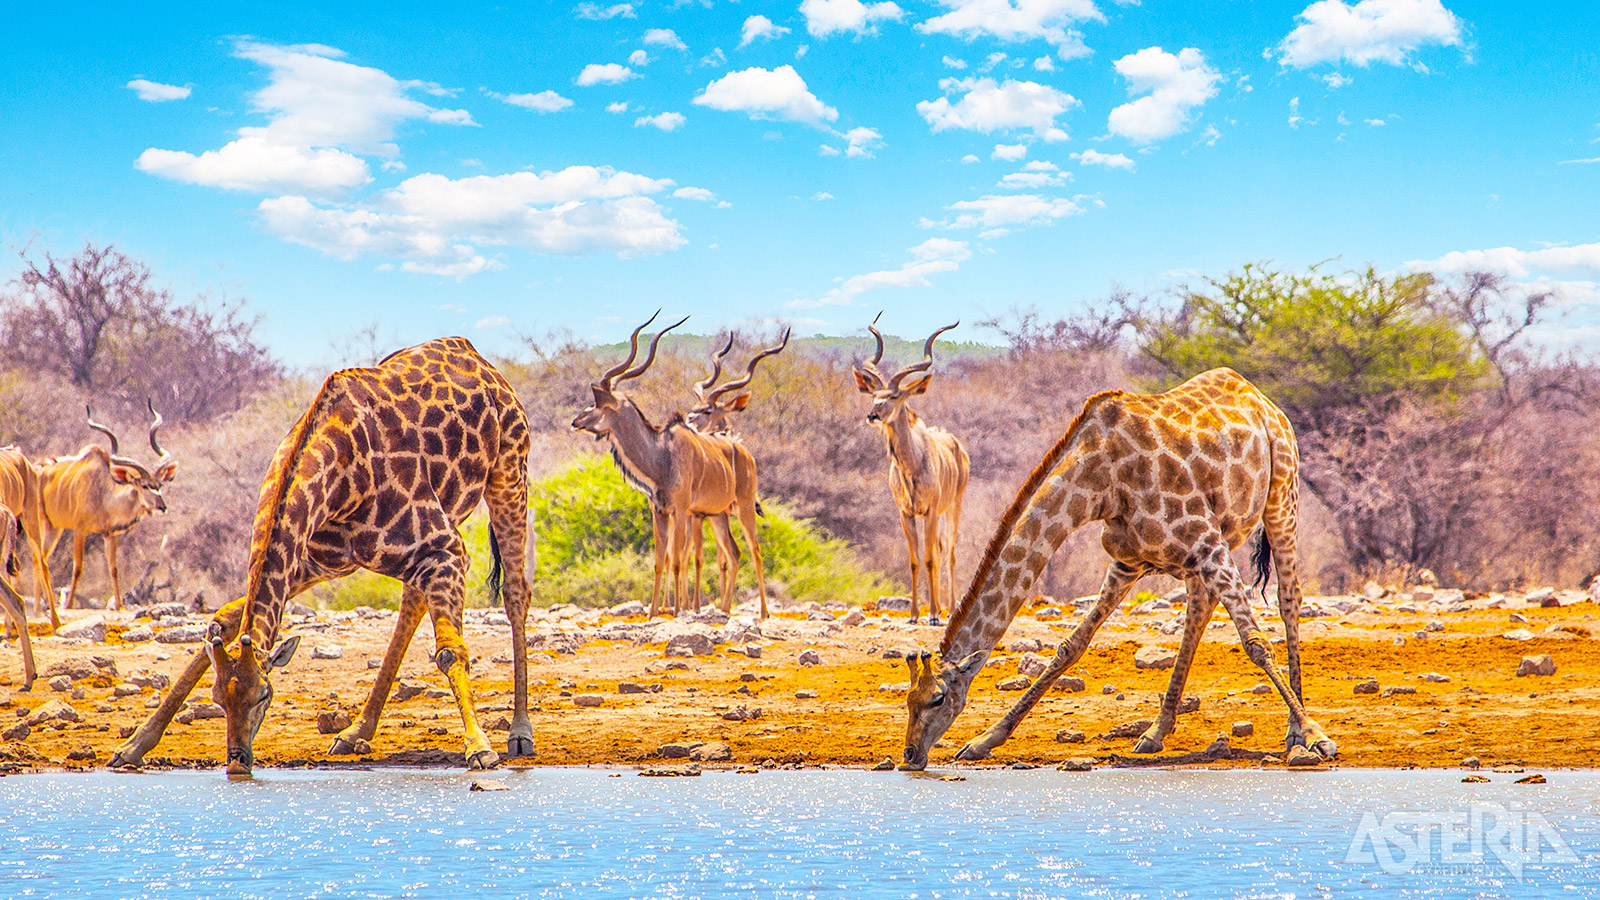 Kenmerkend voor Etosha zijn de grote hoeveelheden wild die je hier kan spotten: olifanten, zebra’s, giraffes, leeuwen, verschillende soorten antilopen...